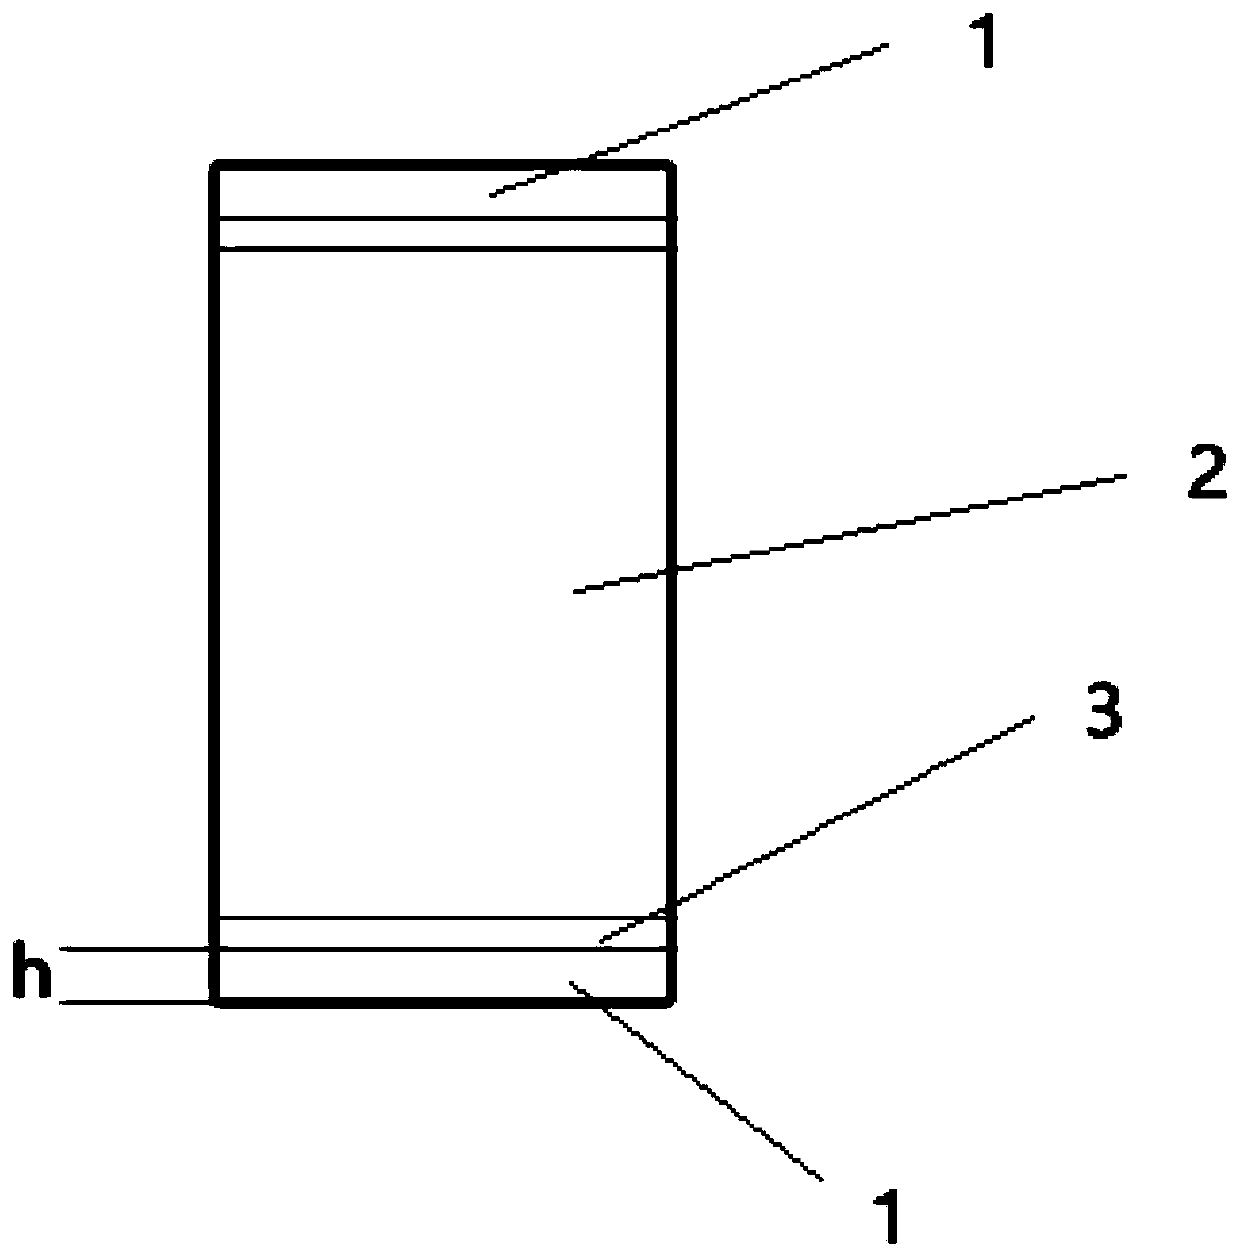 Piezoelectric element lead bonding method and piezoelectric element having pins